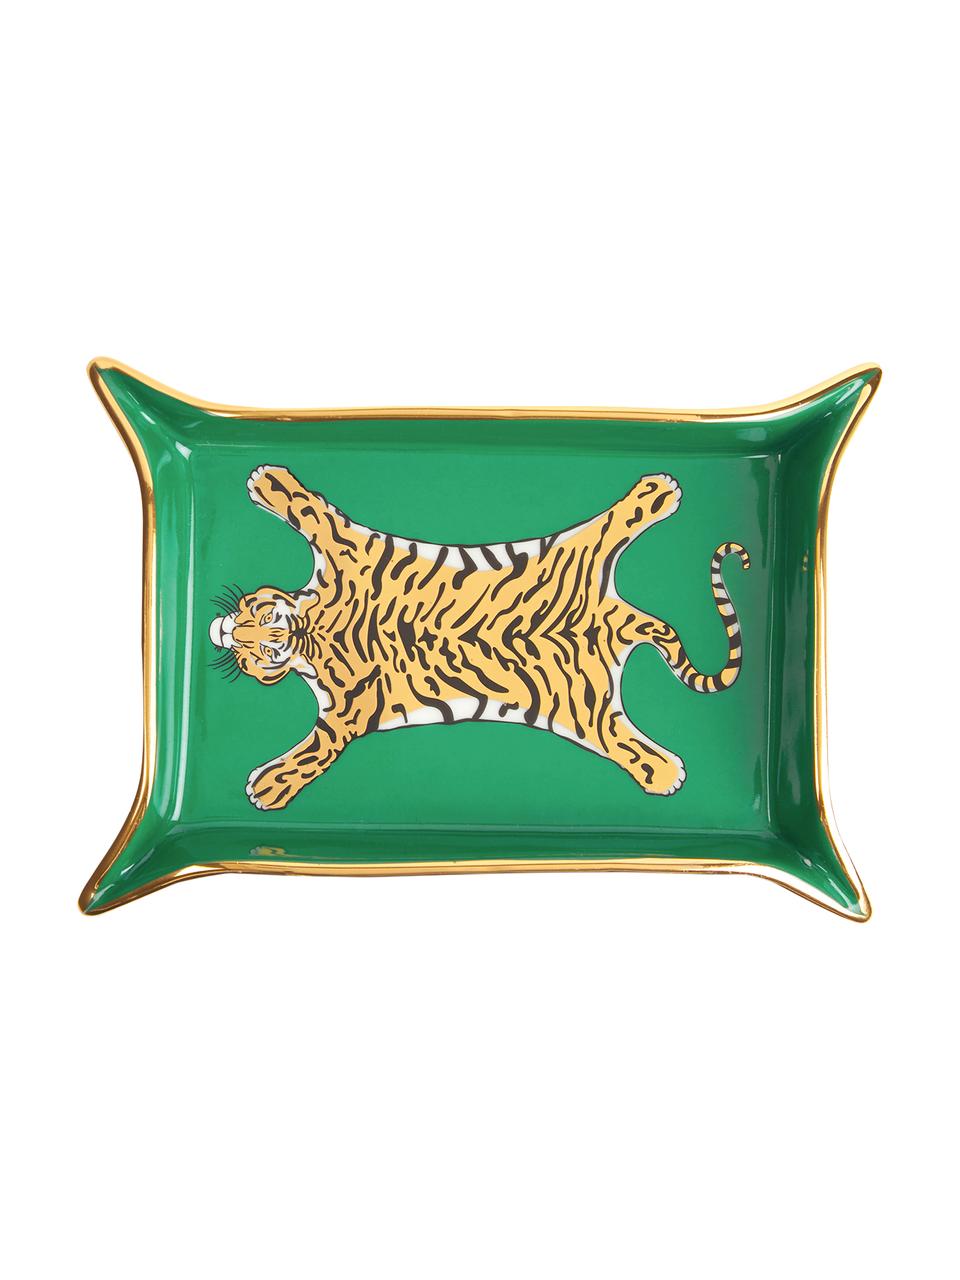 Schaal Tiger, Porselein, vergulde accenten, Binnenkant: groen, goud, beigetinten Buitenkant: wit, B 18 x D 13 cm